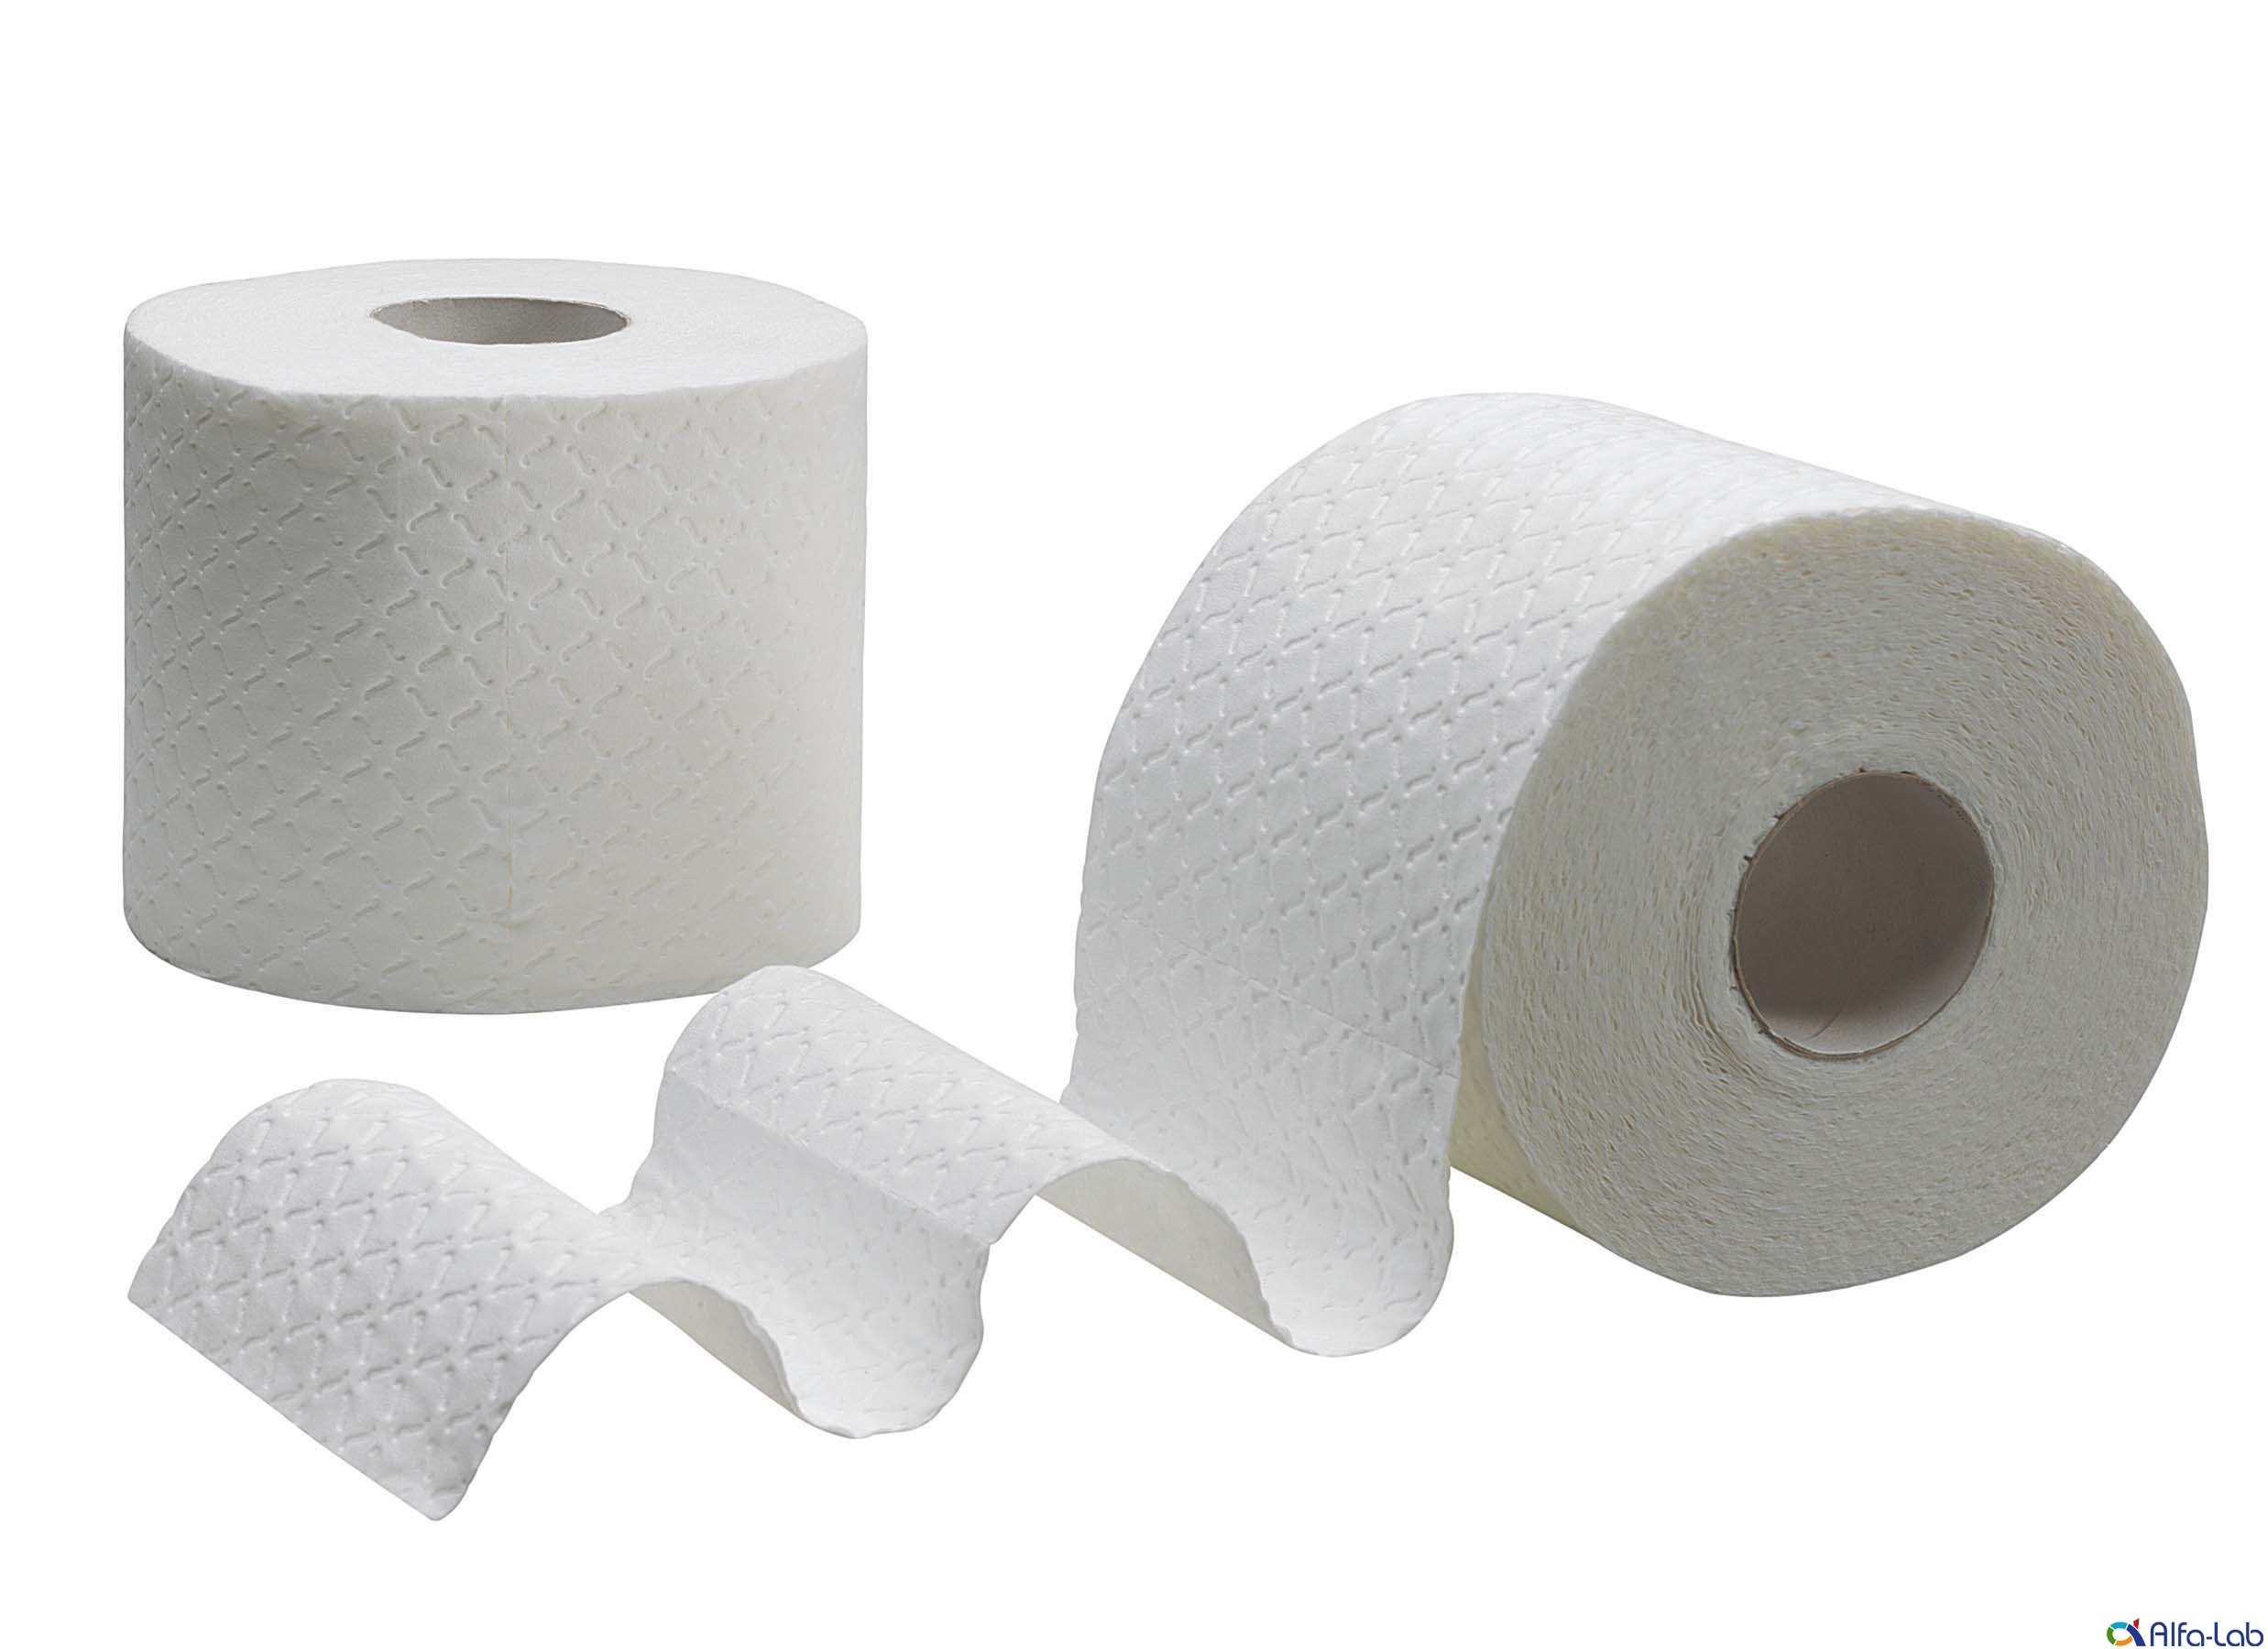 Cтатья о рынке туалетной бумаги